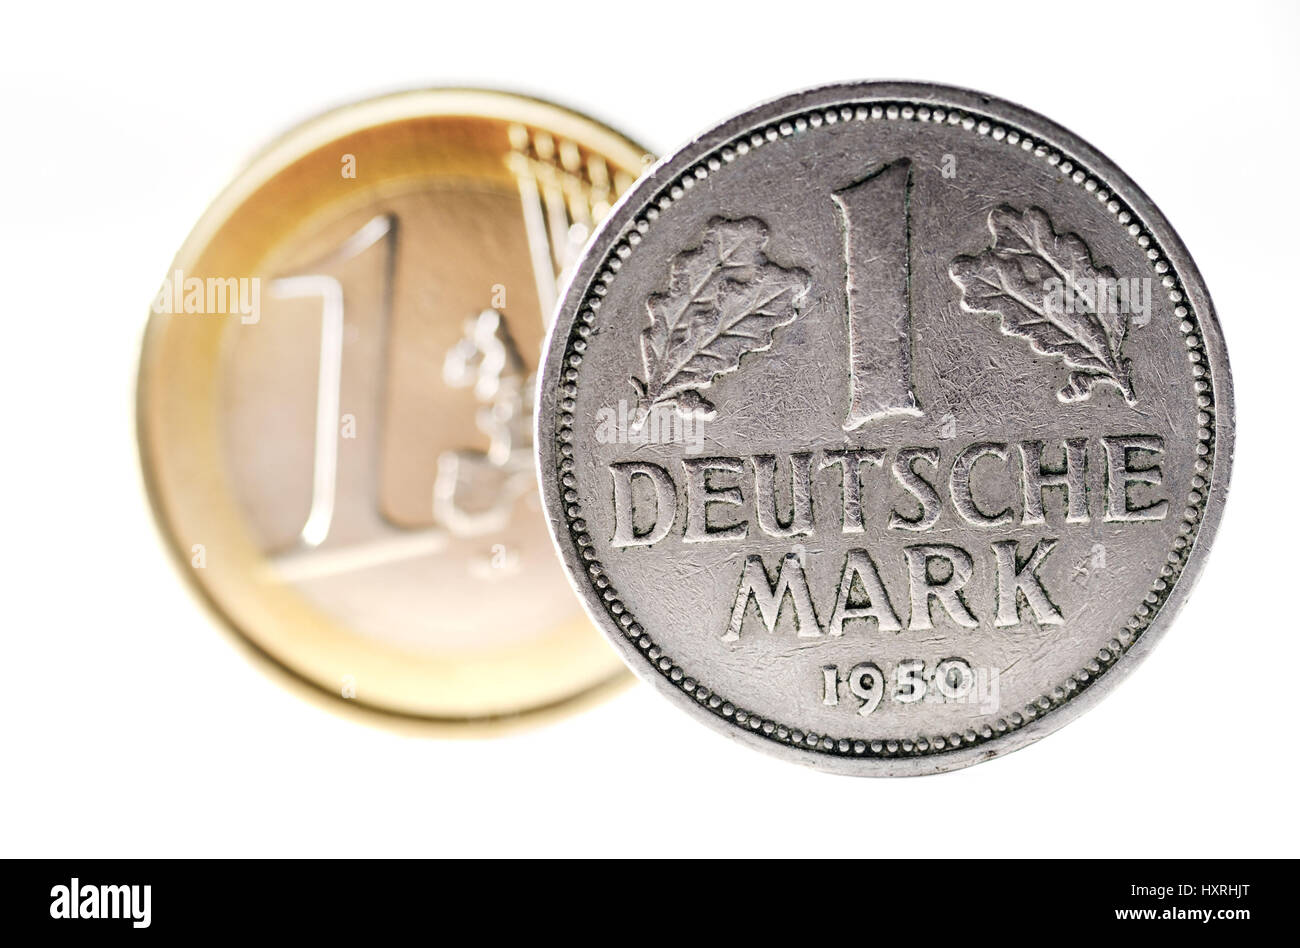 Euro-coin one and a Deutsche Mark coin, Ein-Euro-Münze und eine D-Mark-Münze Stock Photo